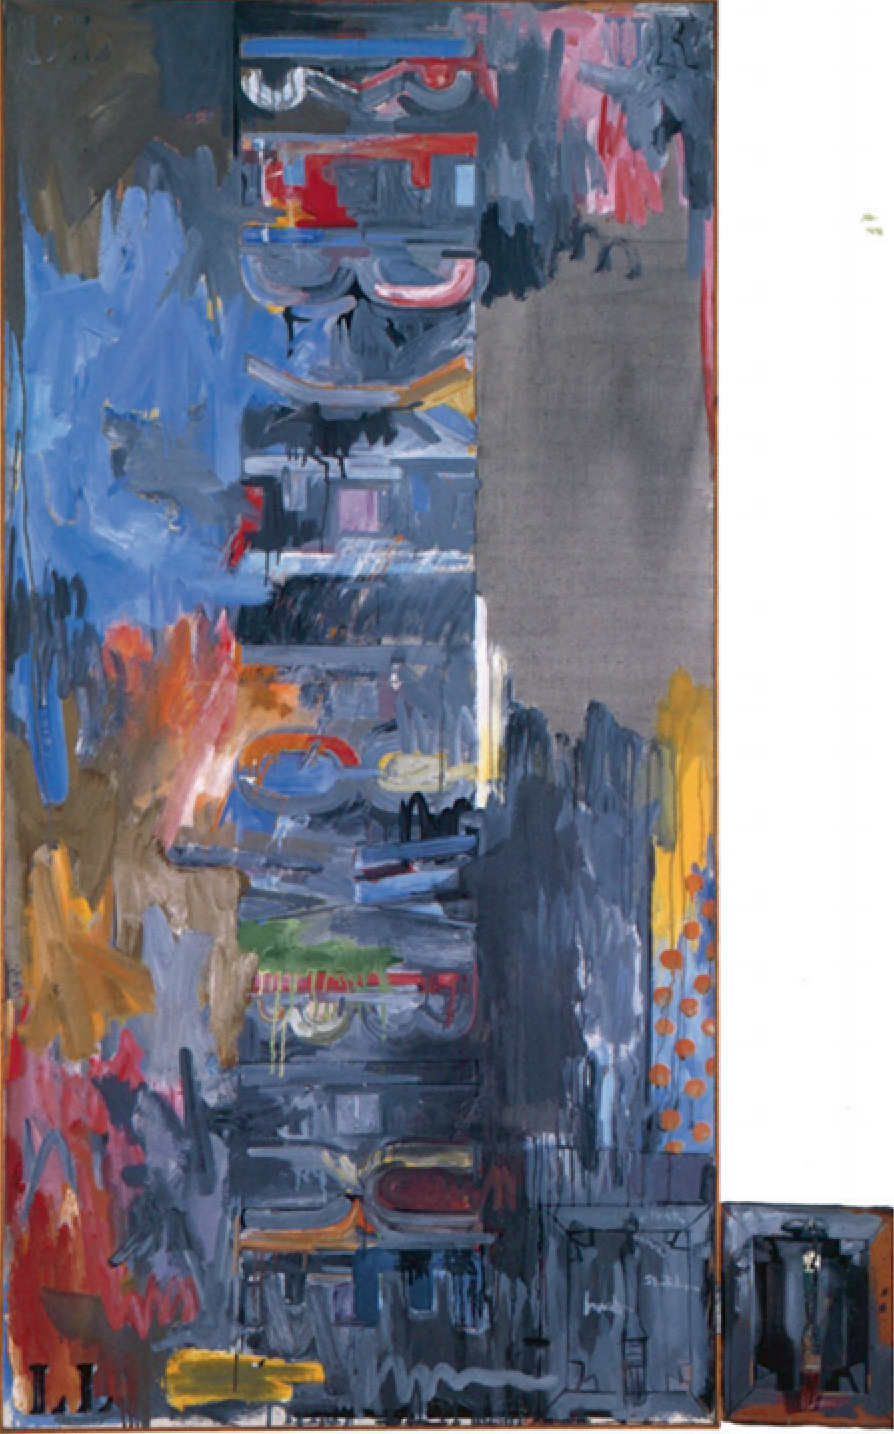 그림 1 느린 평면  1962. 캔버스에 유채 및 오브제 181x90cm, 스톡홀름 근대 미술관